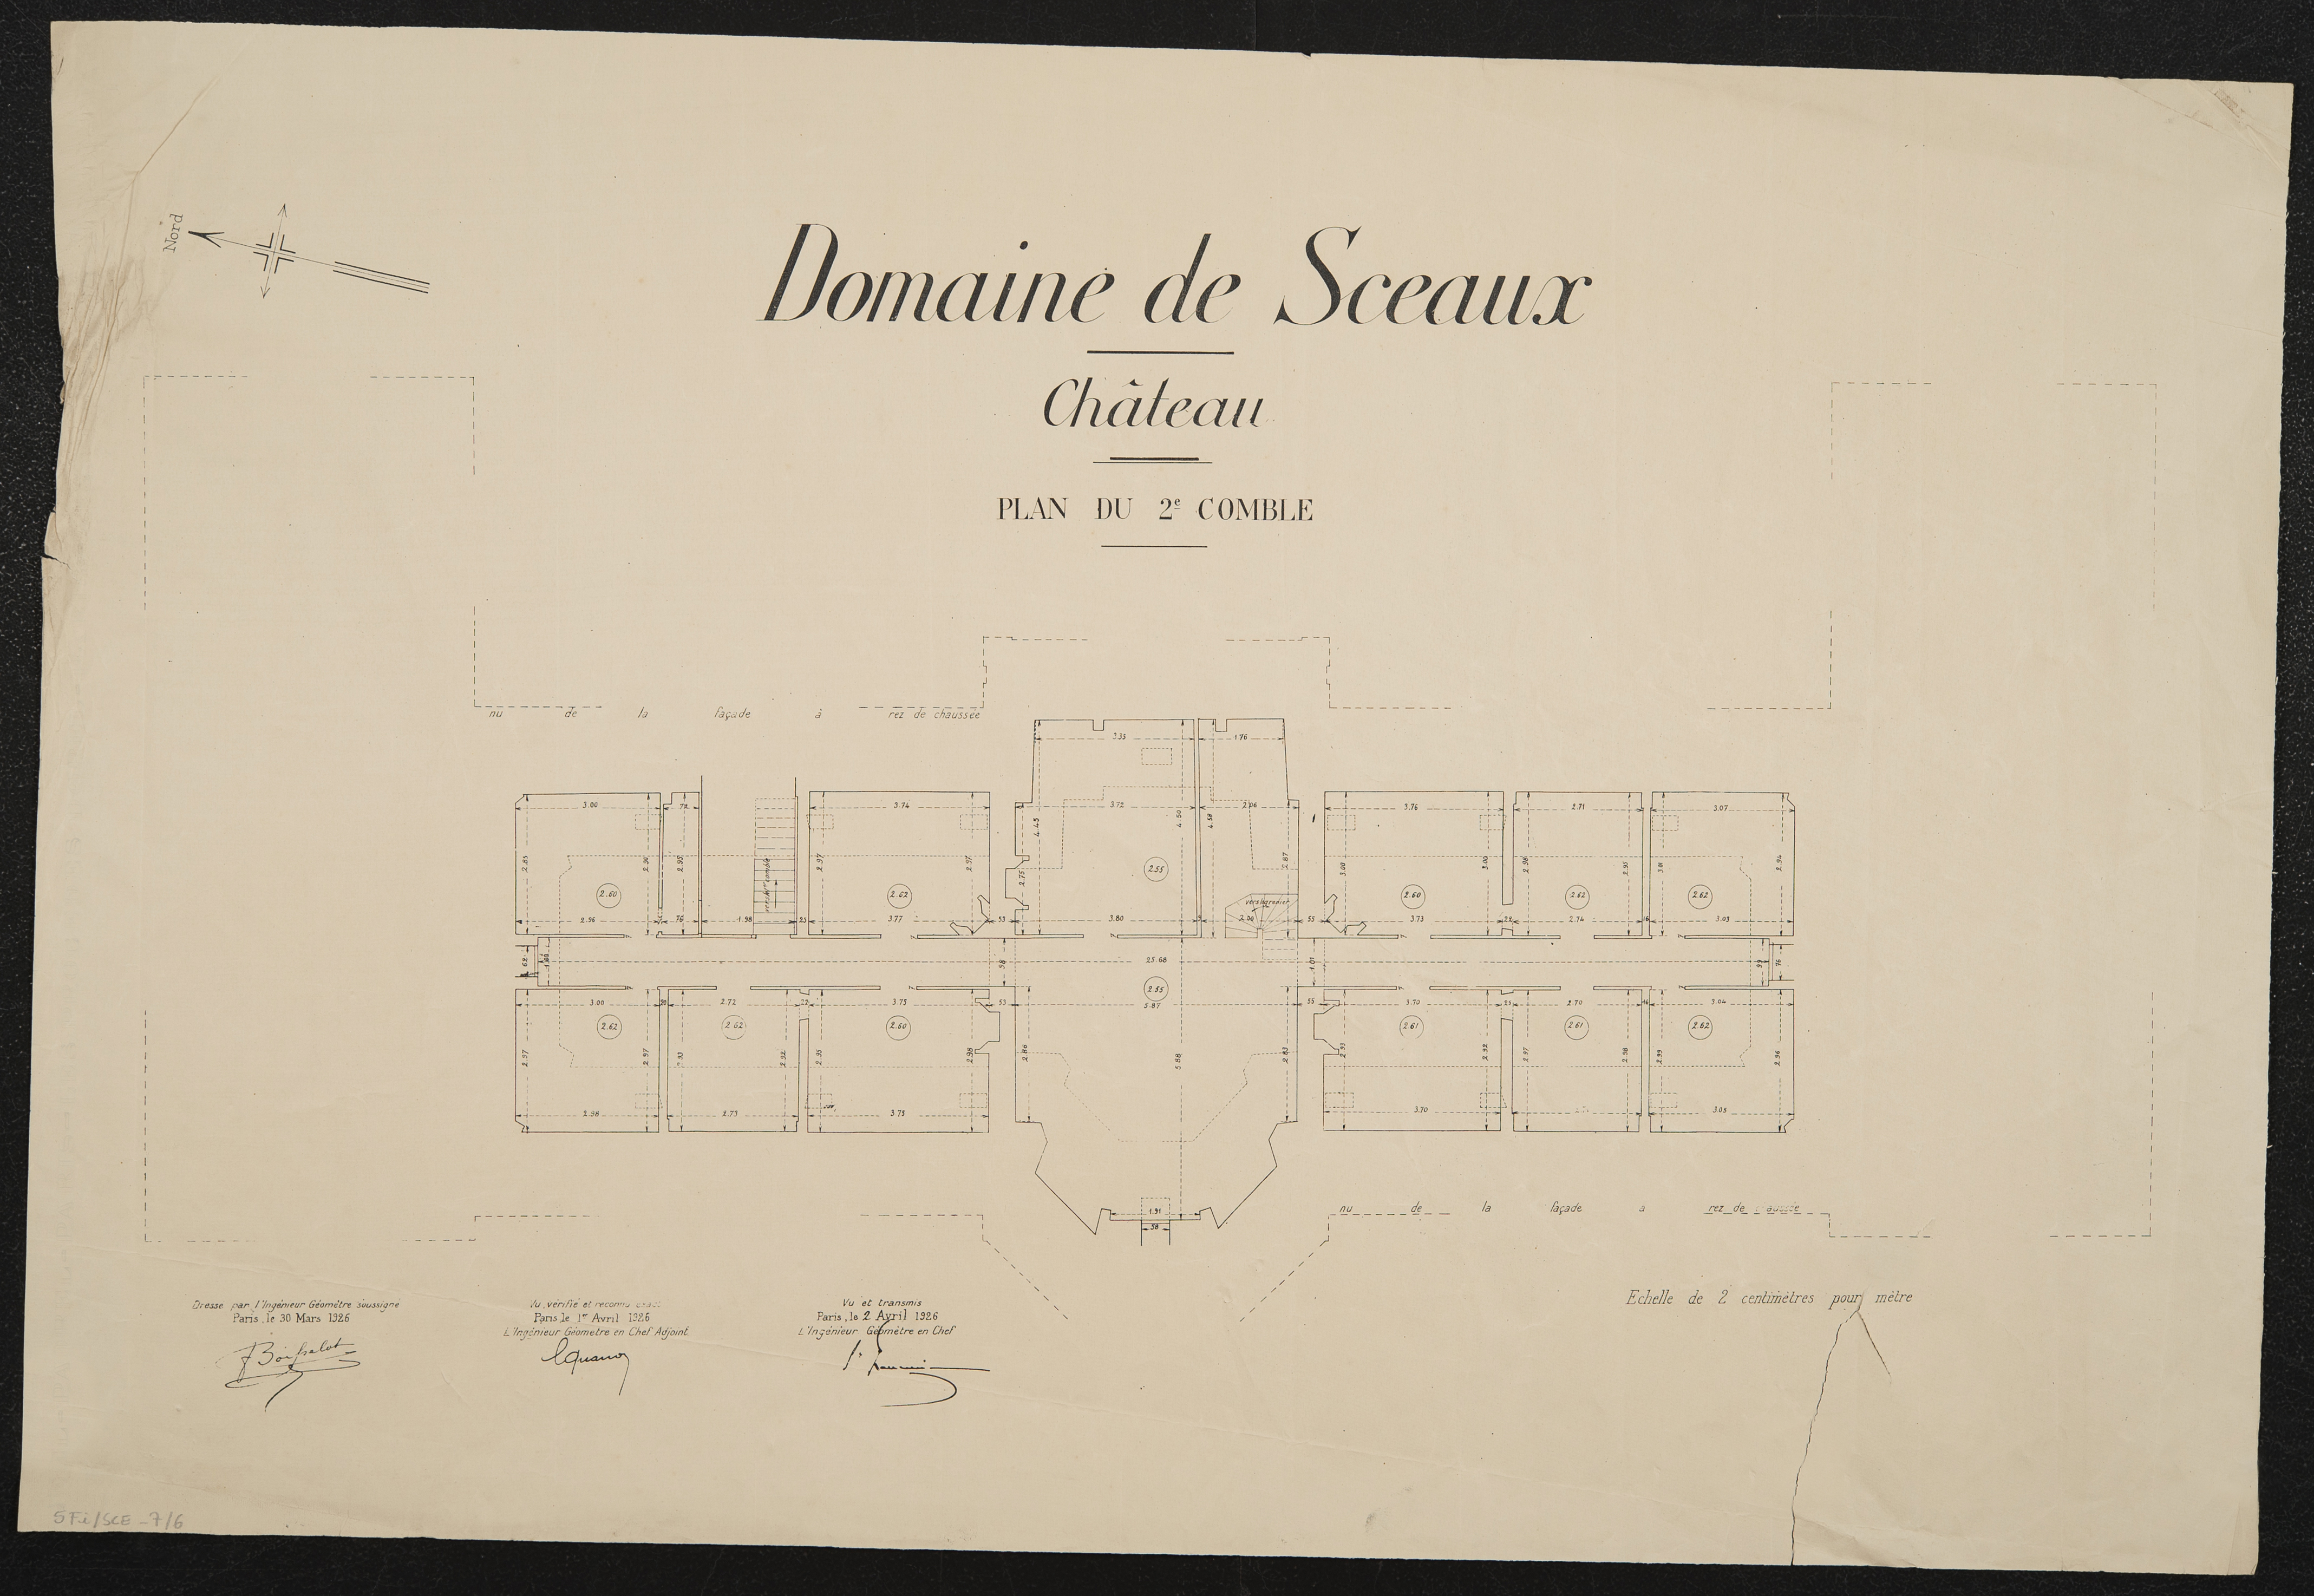 Domaine de Sceaux : château : plan du 2ème comble. 1926.